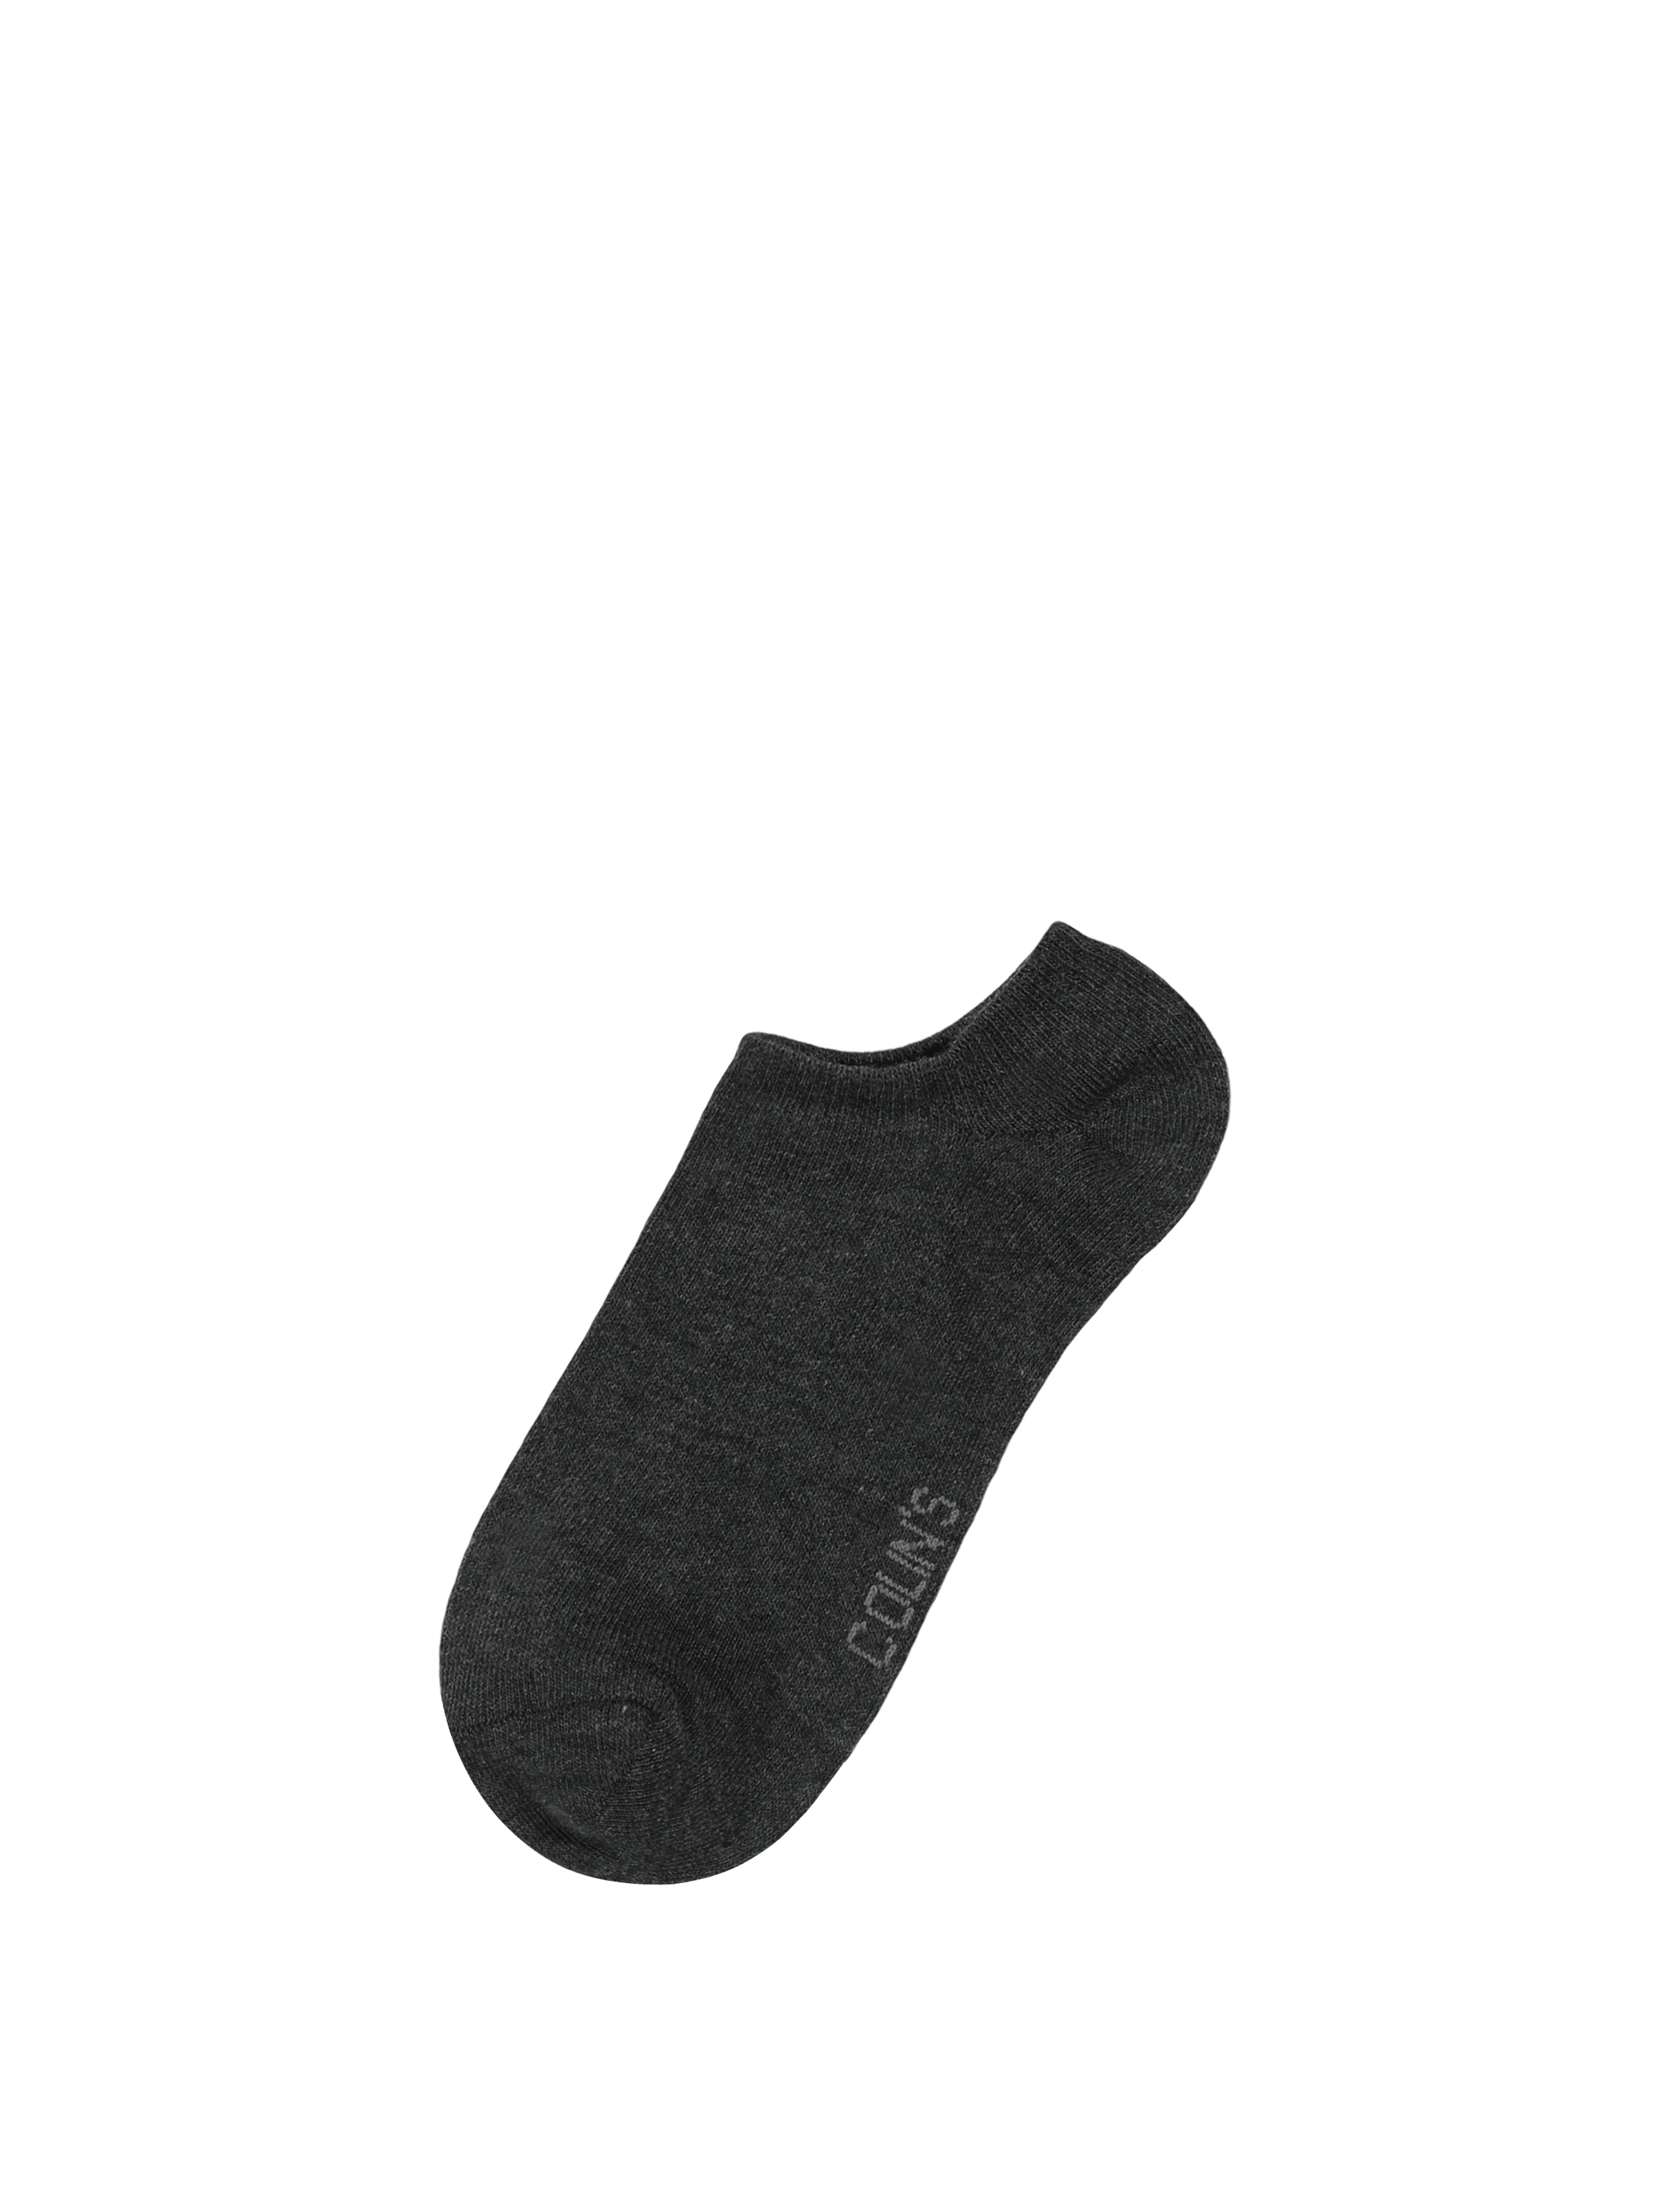 Kadın Antrasit Çorap Claacwsck0251810